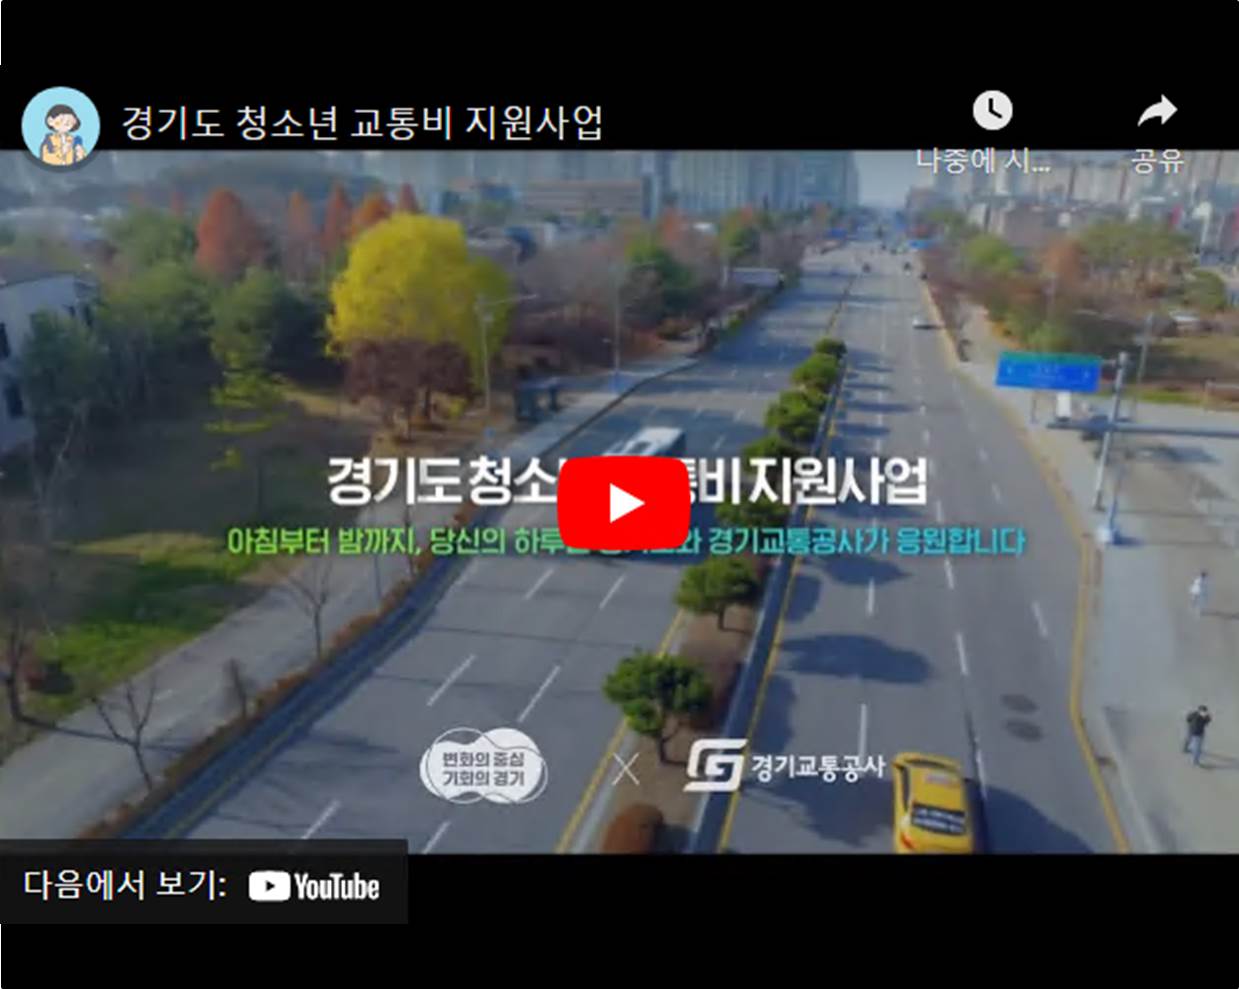 경기도 청소년 교통비 지원사업 홍보 영상, youtube로 새창 열림